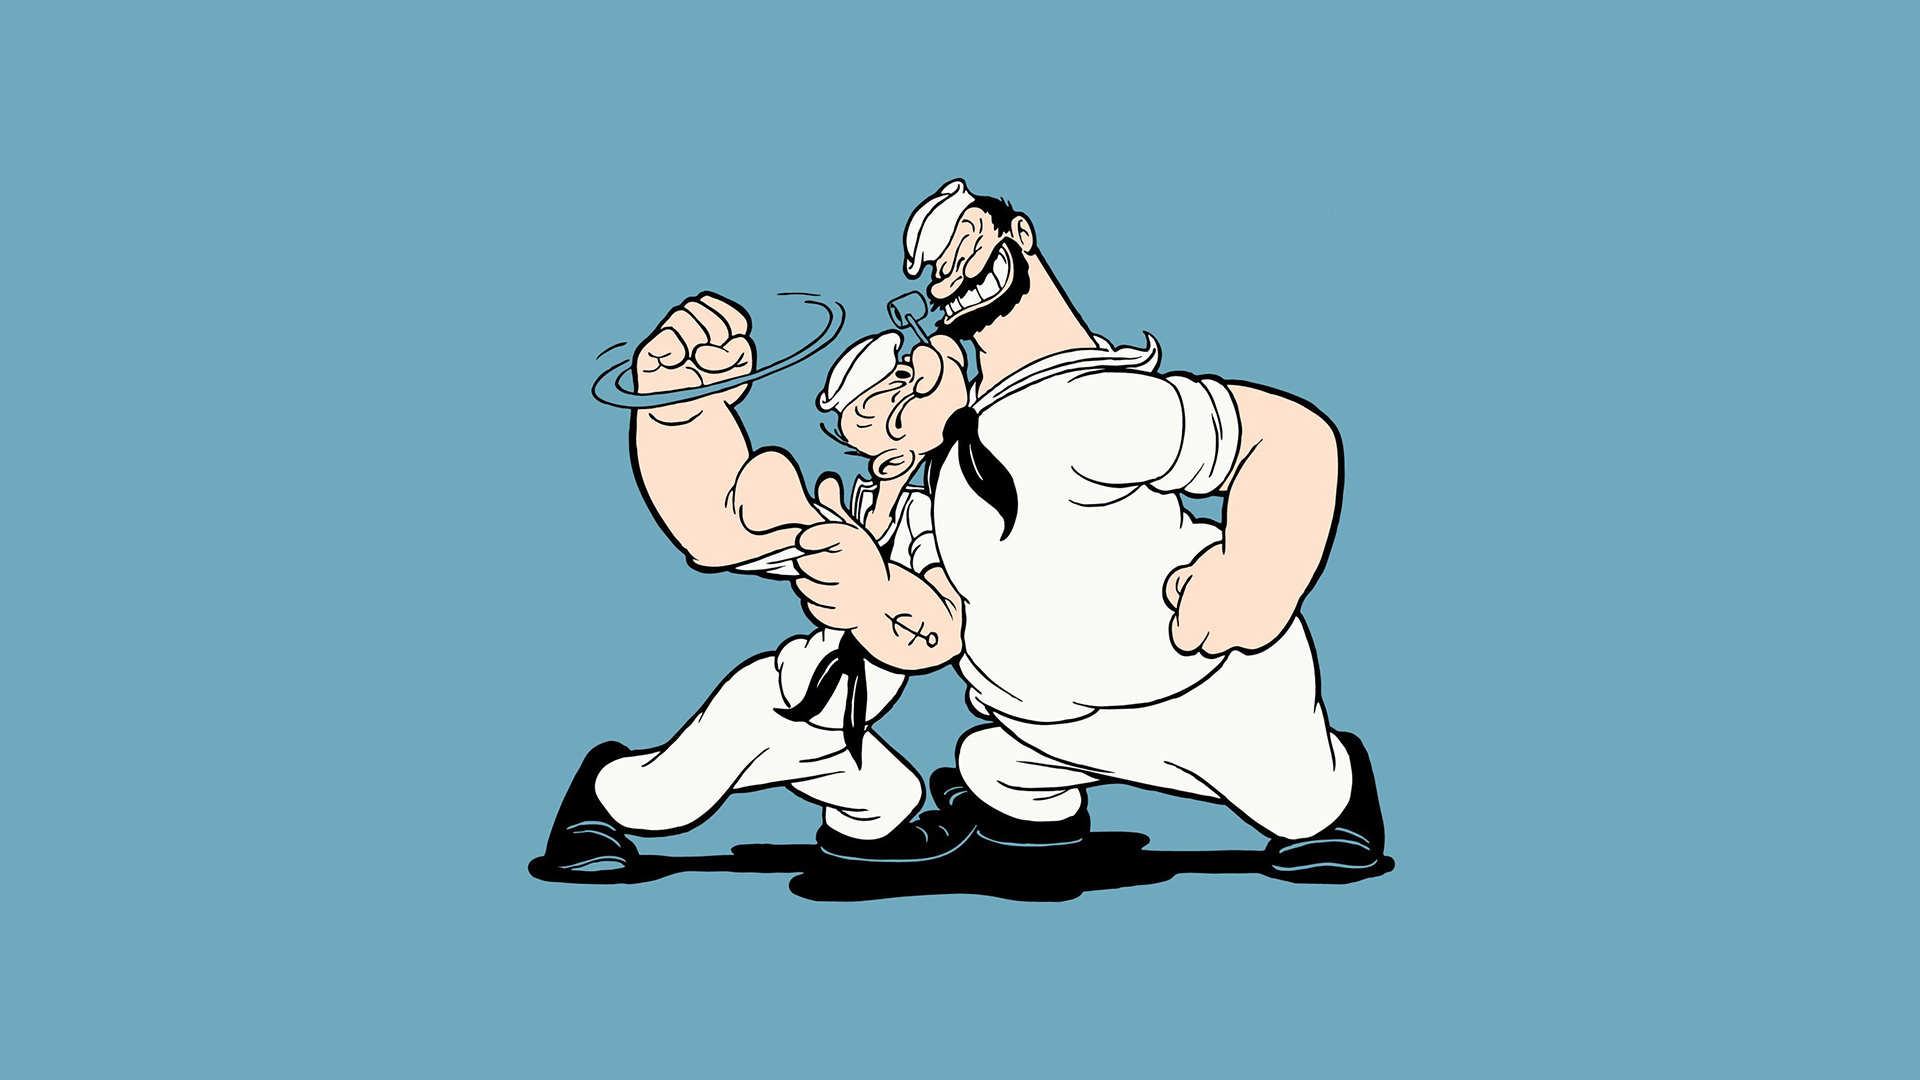 Popeye the Sailor, Artistic fan art, Animated series, TV fan, 1920x1080 Full HD Desktop